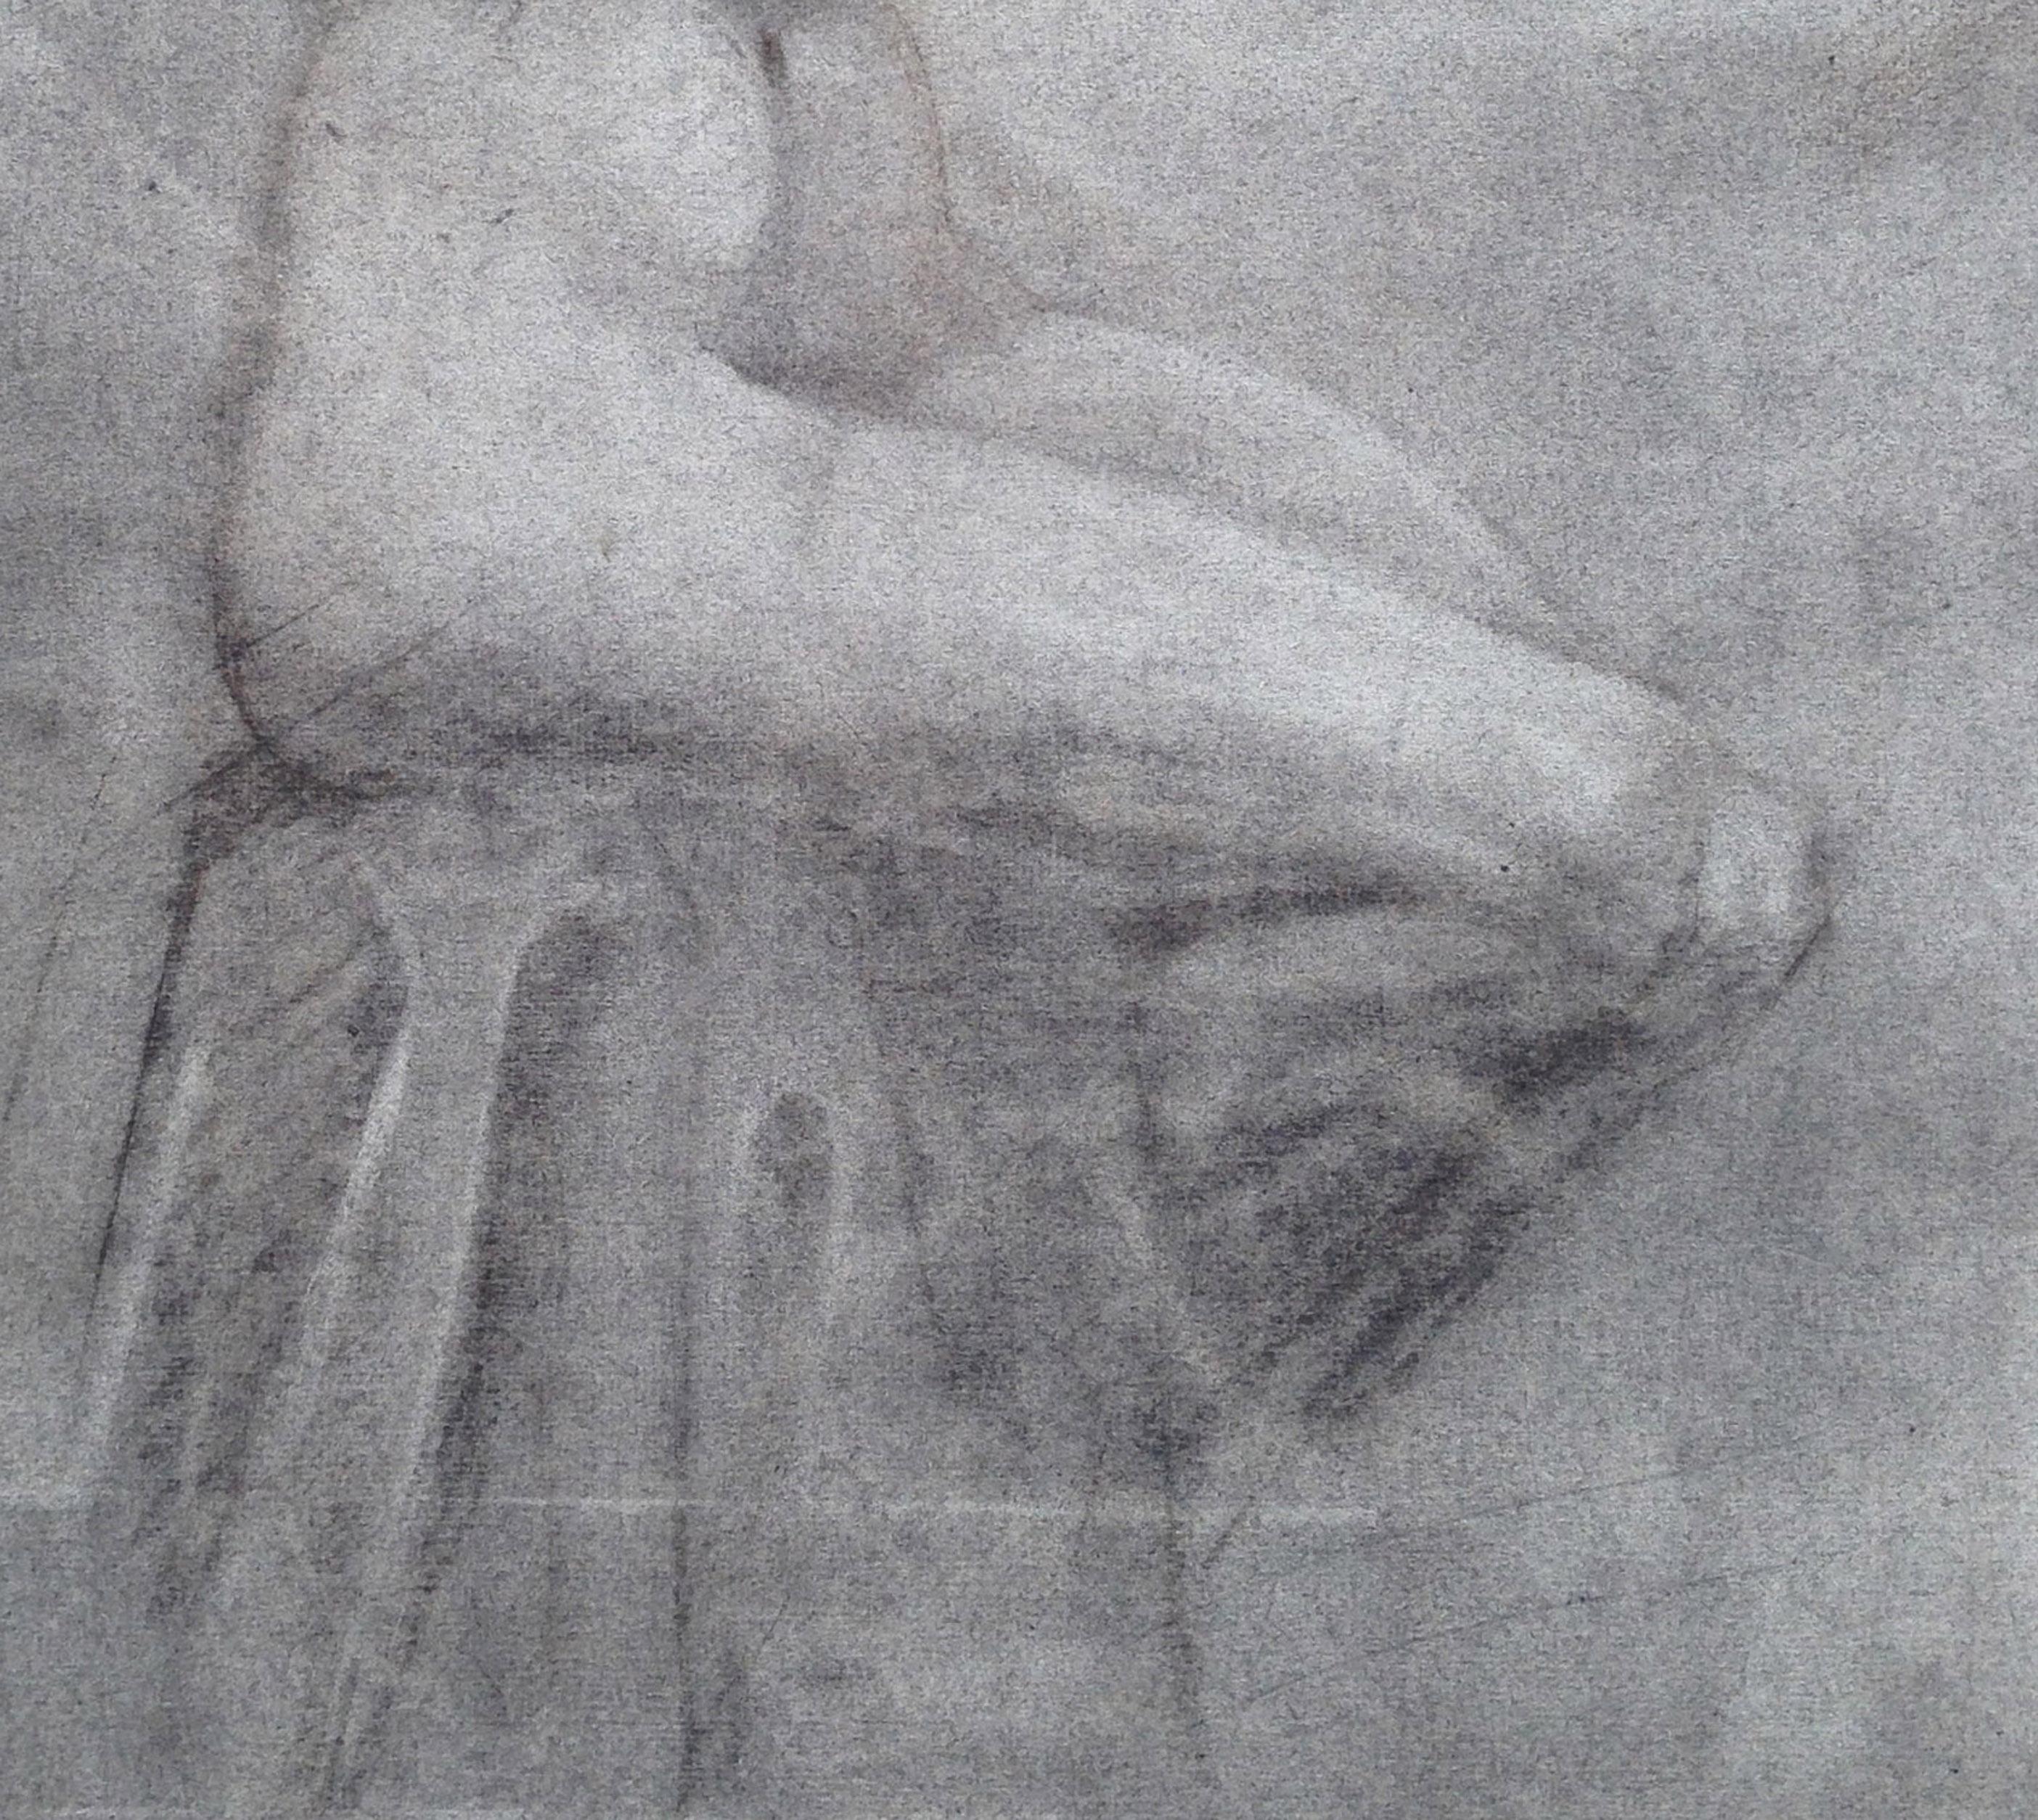 Studie eines sitzenden Akts aus den 1940er Jahren  (Grau), Figurative Art, von Unknown